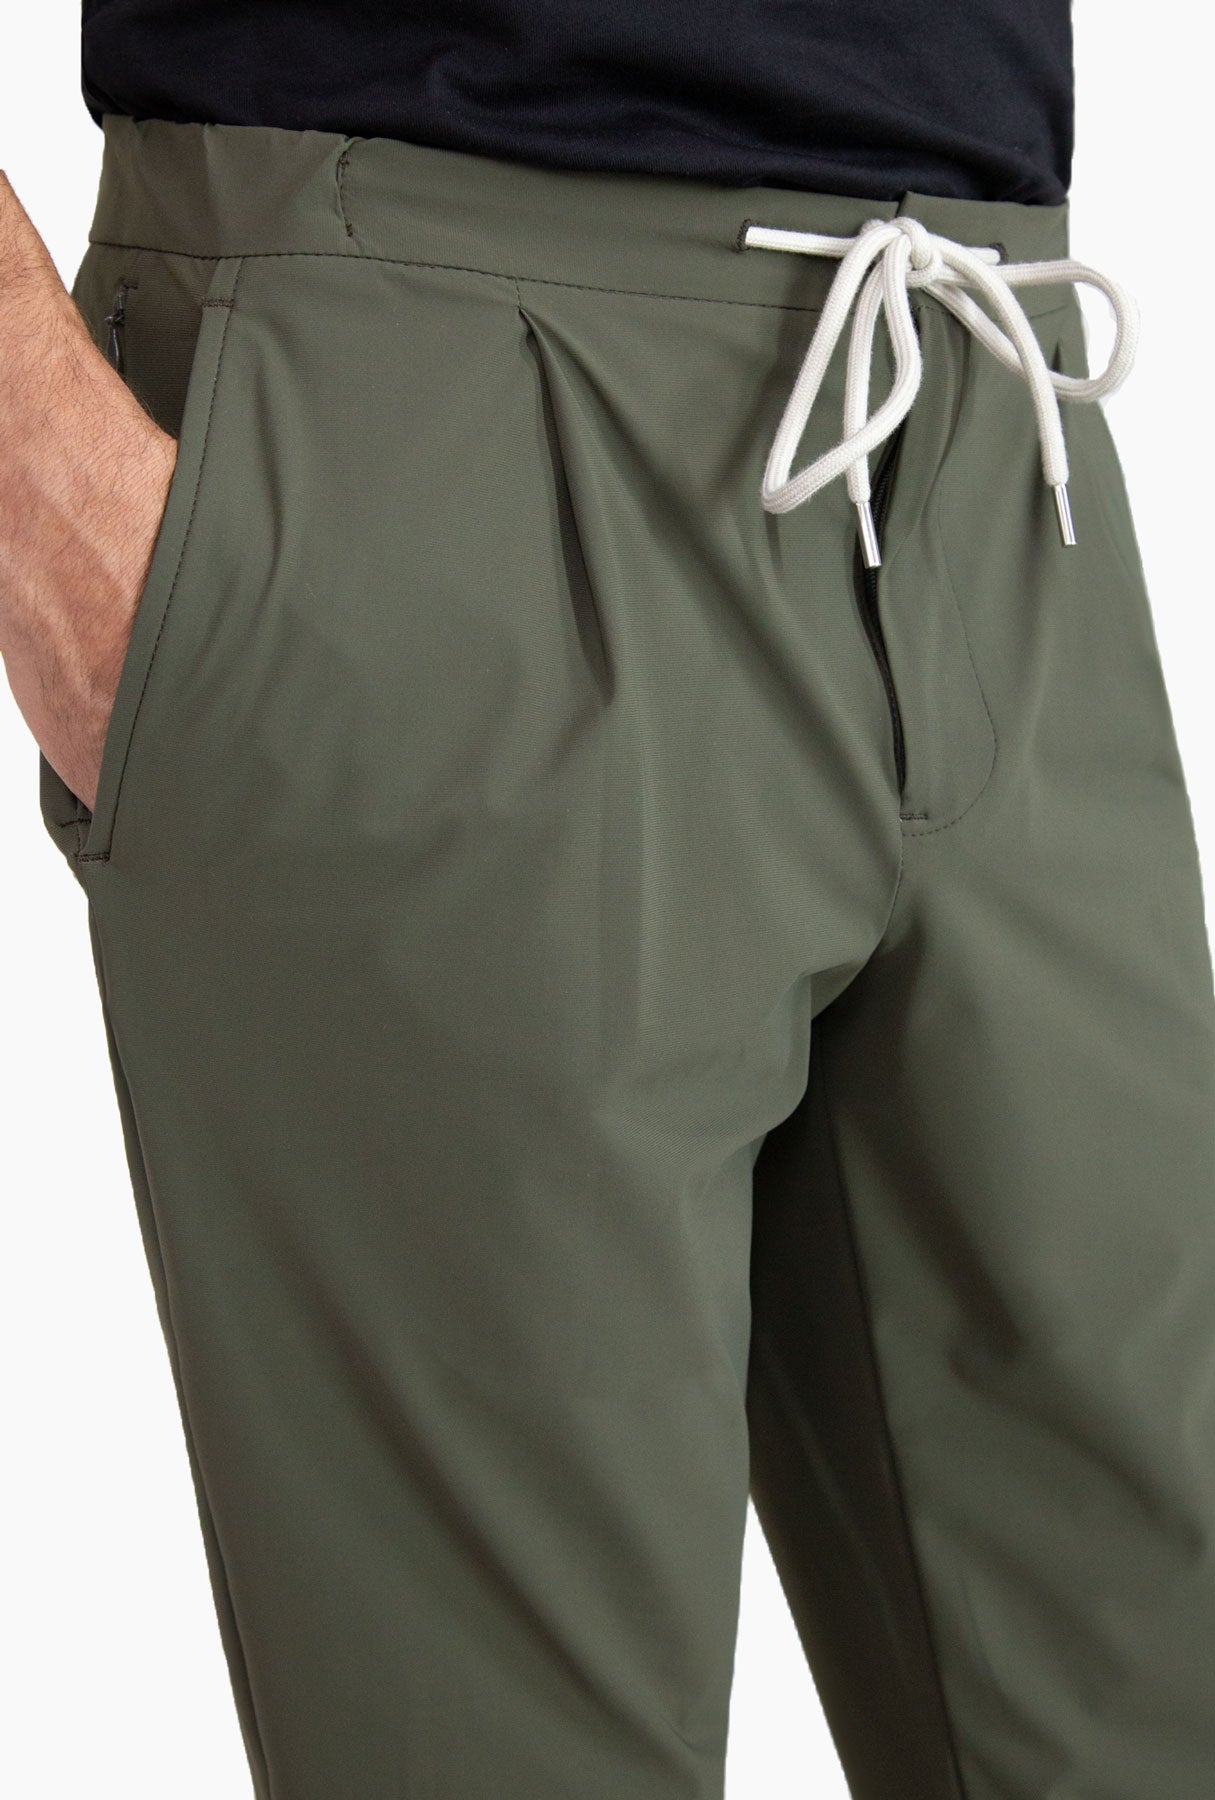 Pantalon Kinetix Jogger Simple Verde Militar